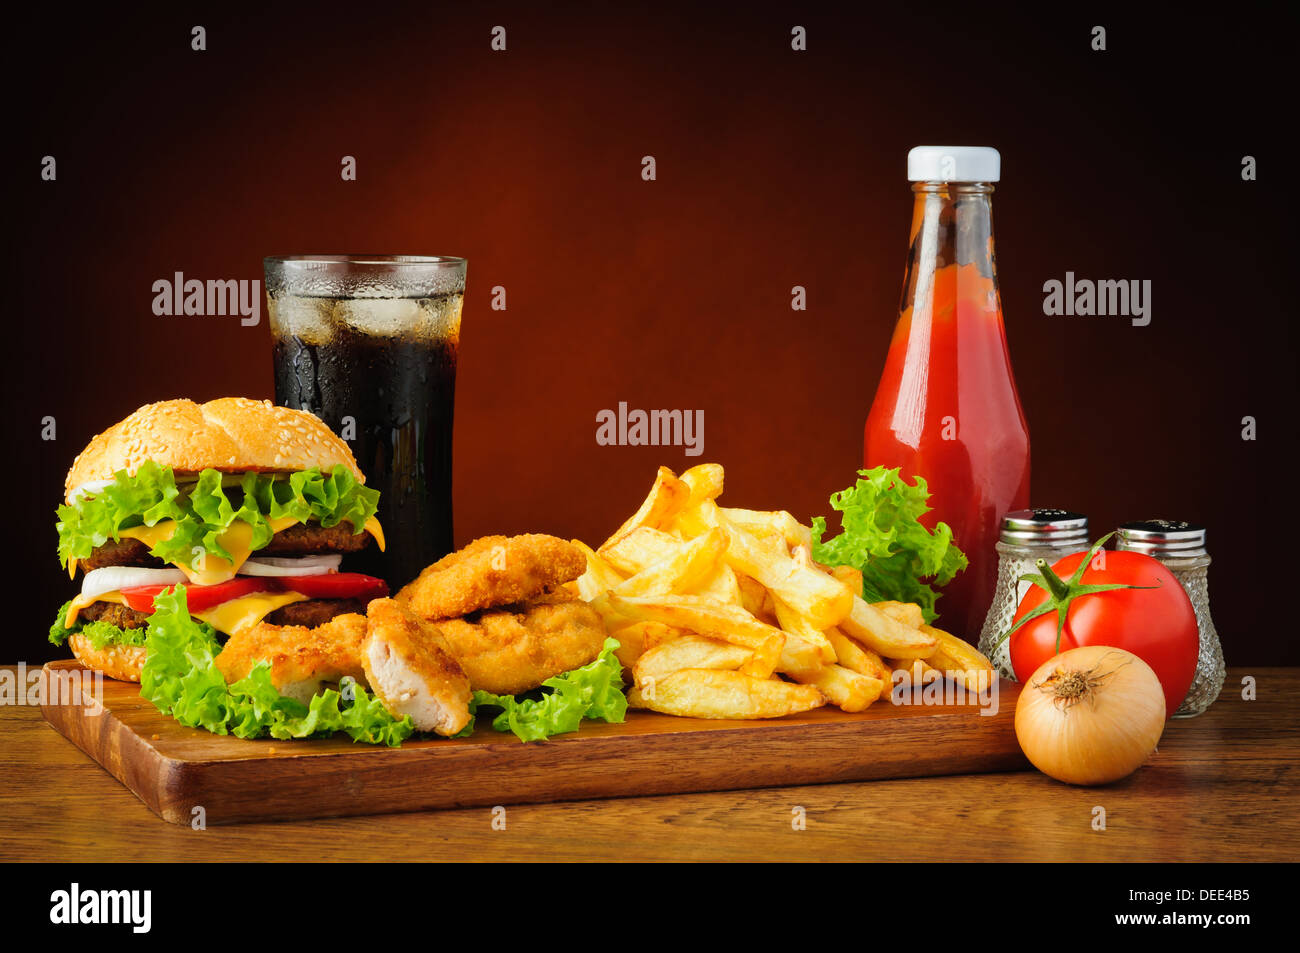 Il fast food menu con hamburger o cheeseburger, tradizionale patatine fritte, pepite di pollo, cola e tomato ketchup Foto Stock